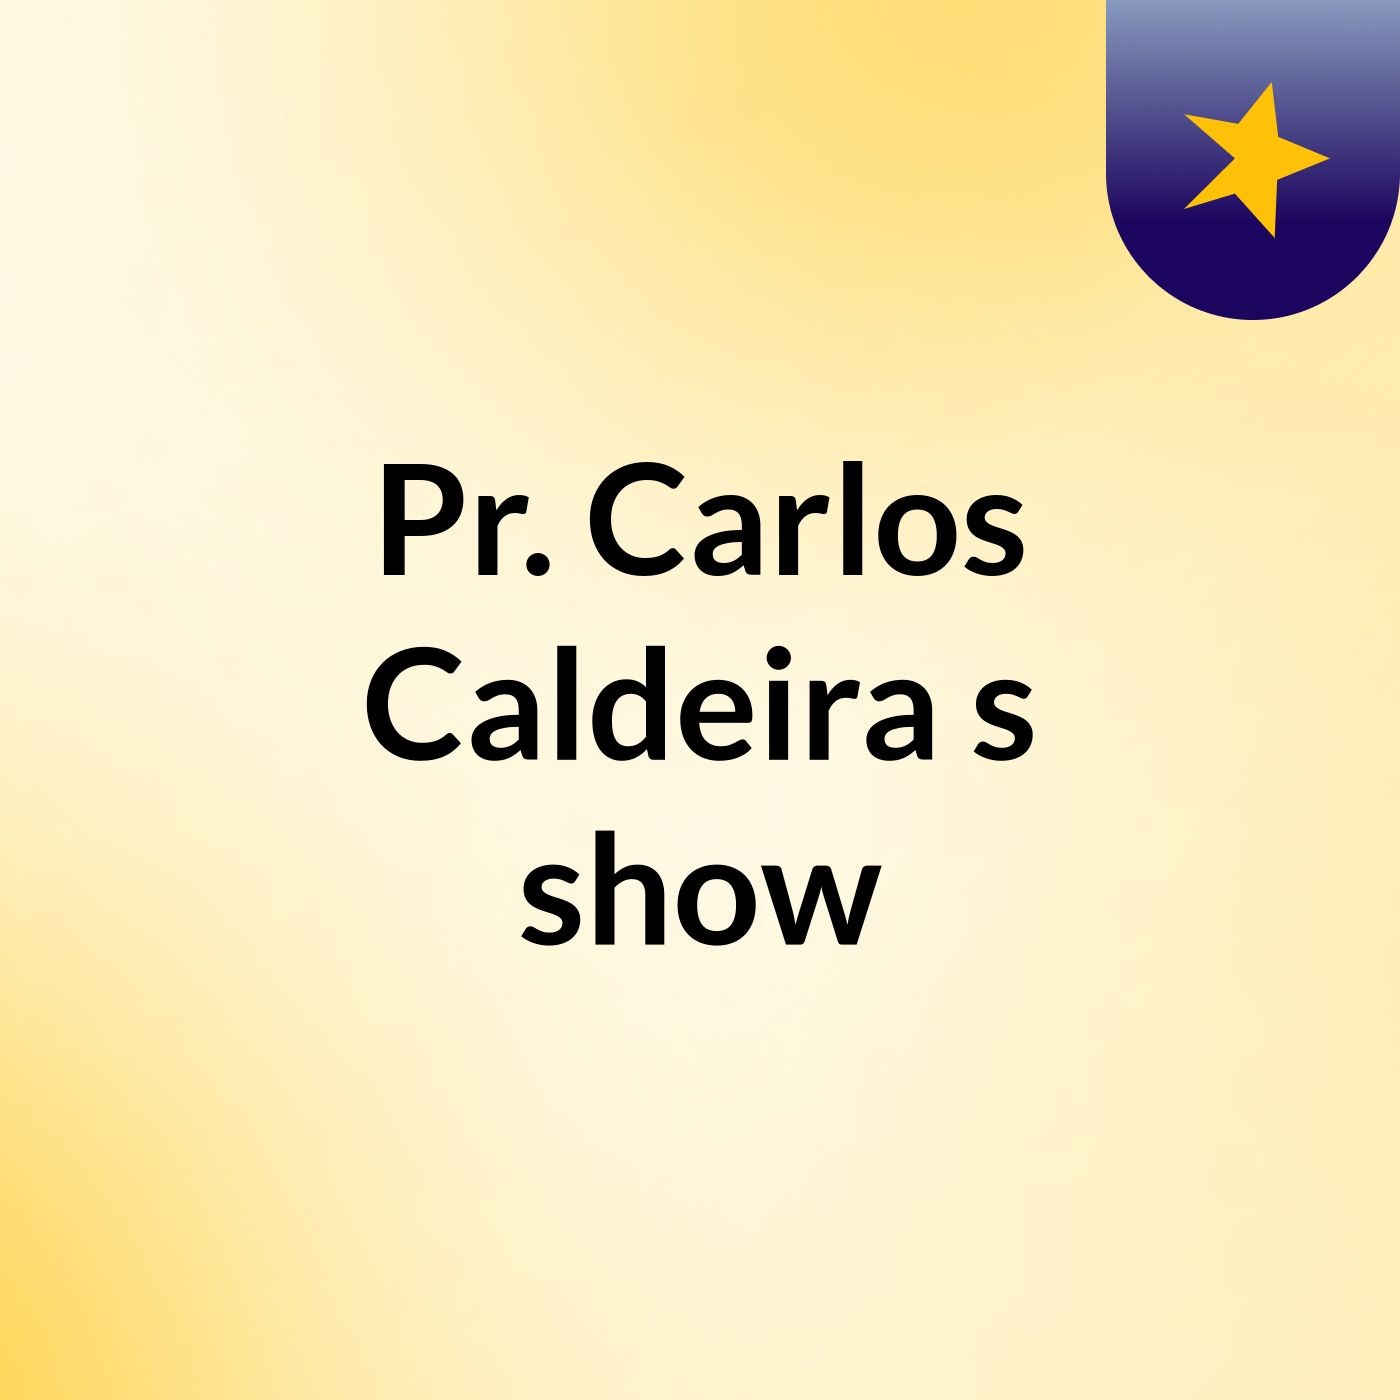 Pr. Carlos Caldeira's show